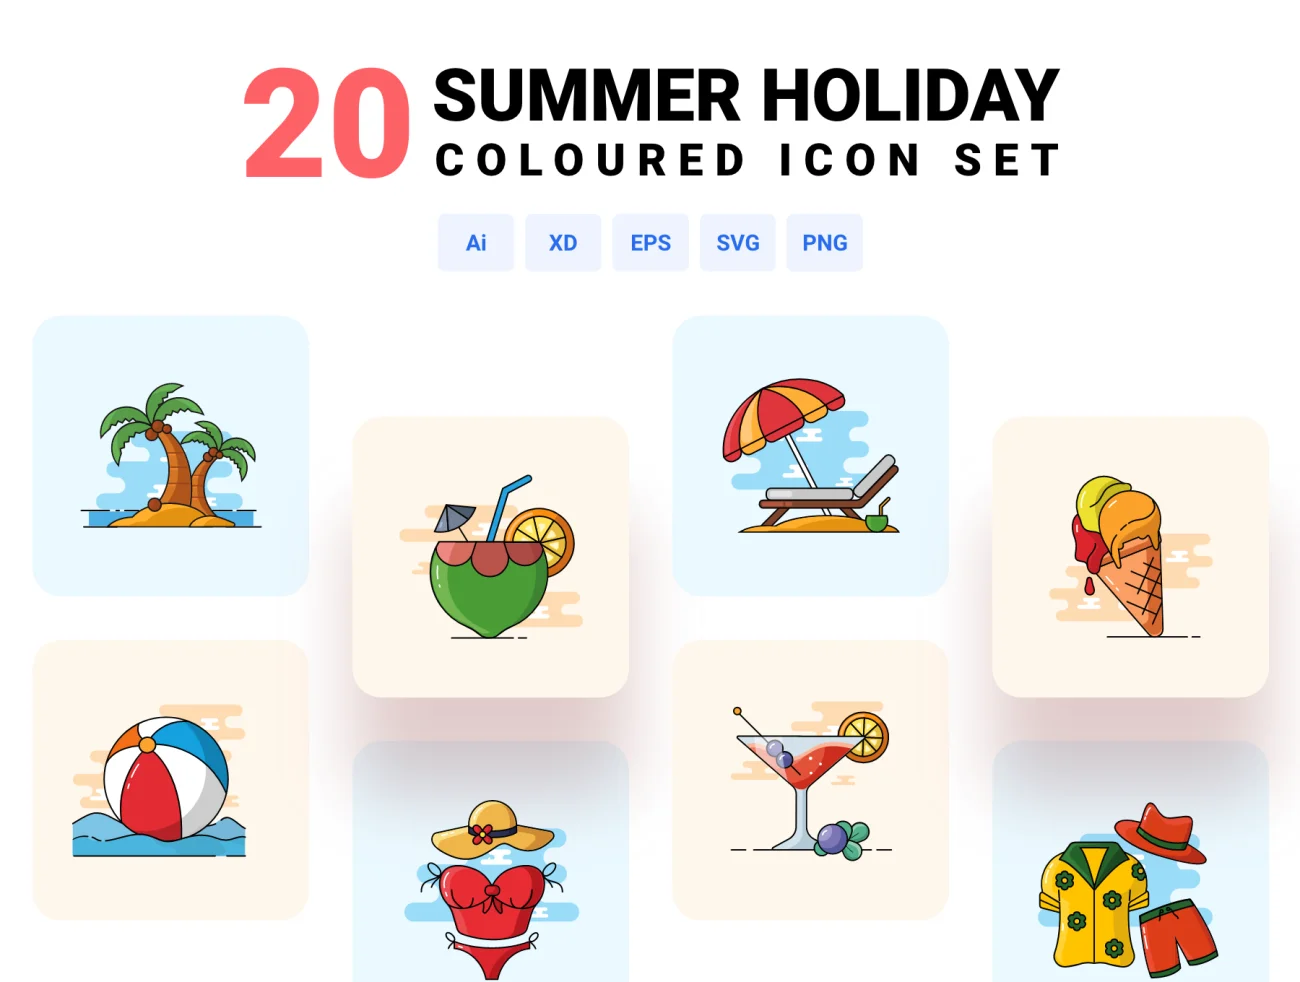 20款夏季假日旅游度假出行多彩图标合集 Summer holiday – Coloured icon set插图1